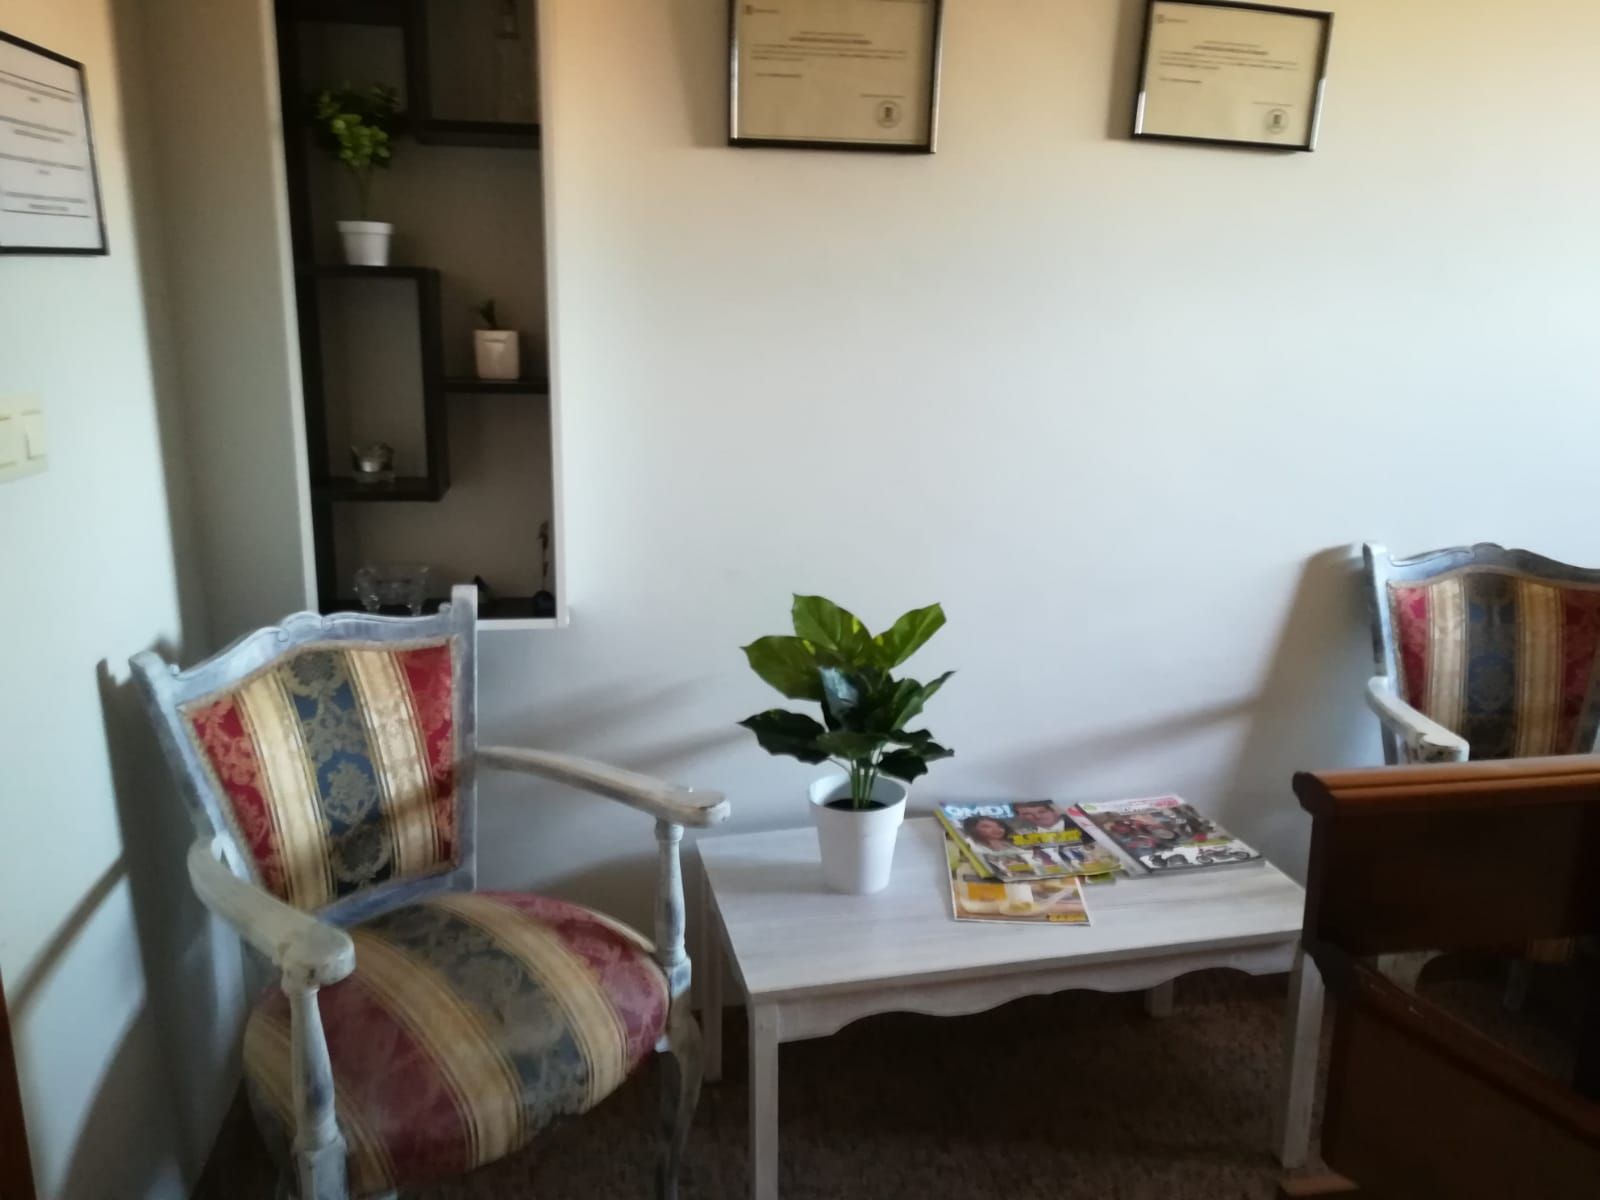 Zonas comunes y sala de espera con diseños adecuados para familiares y residentes